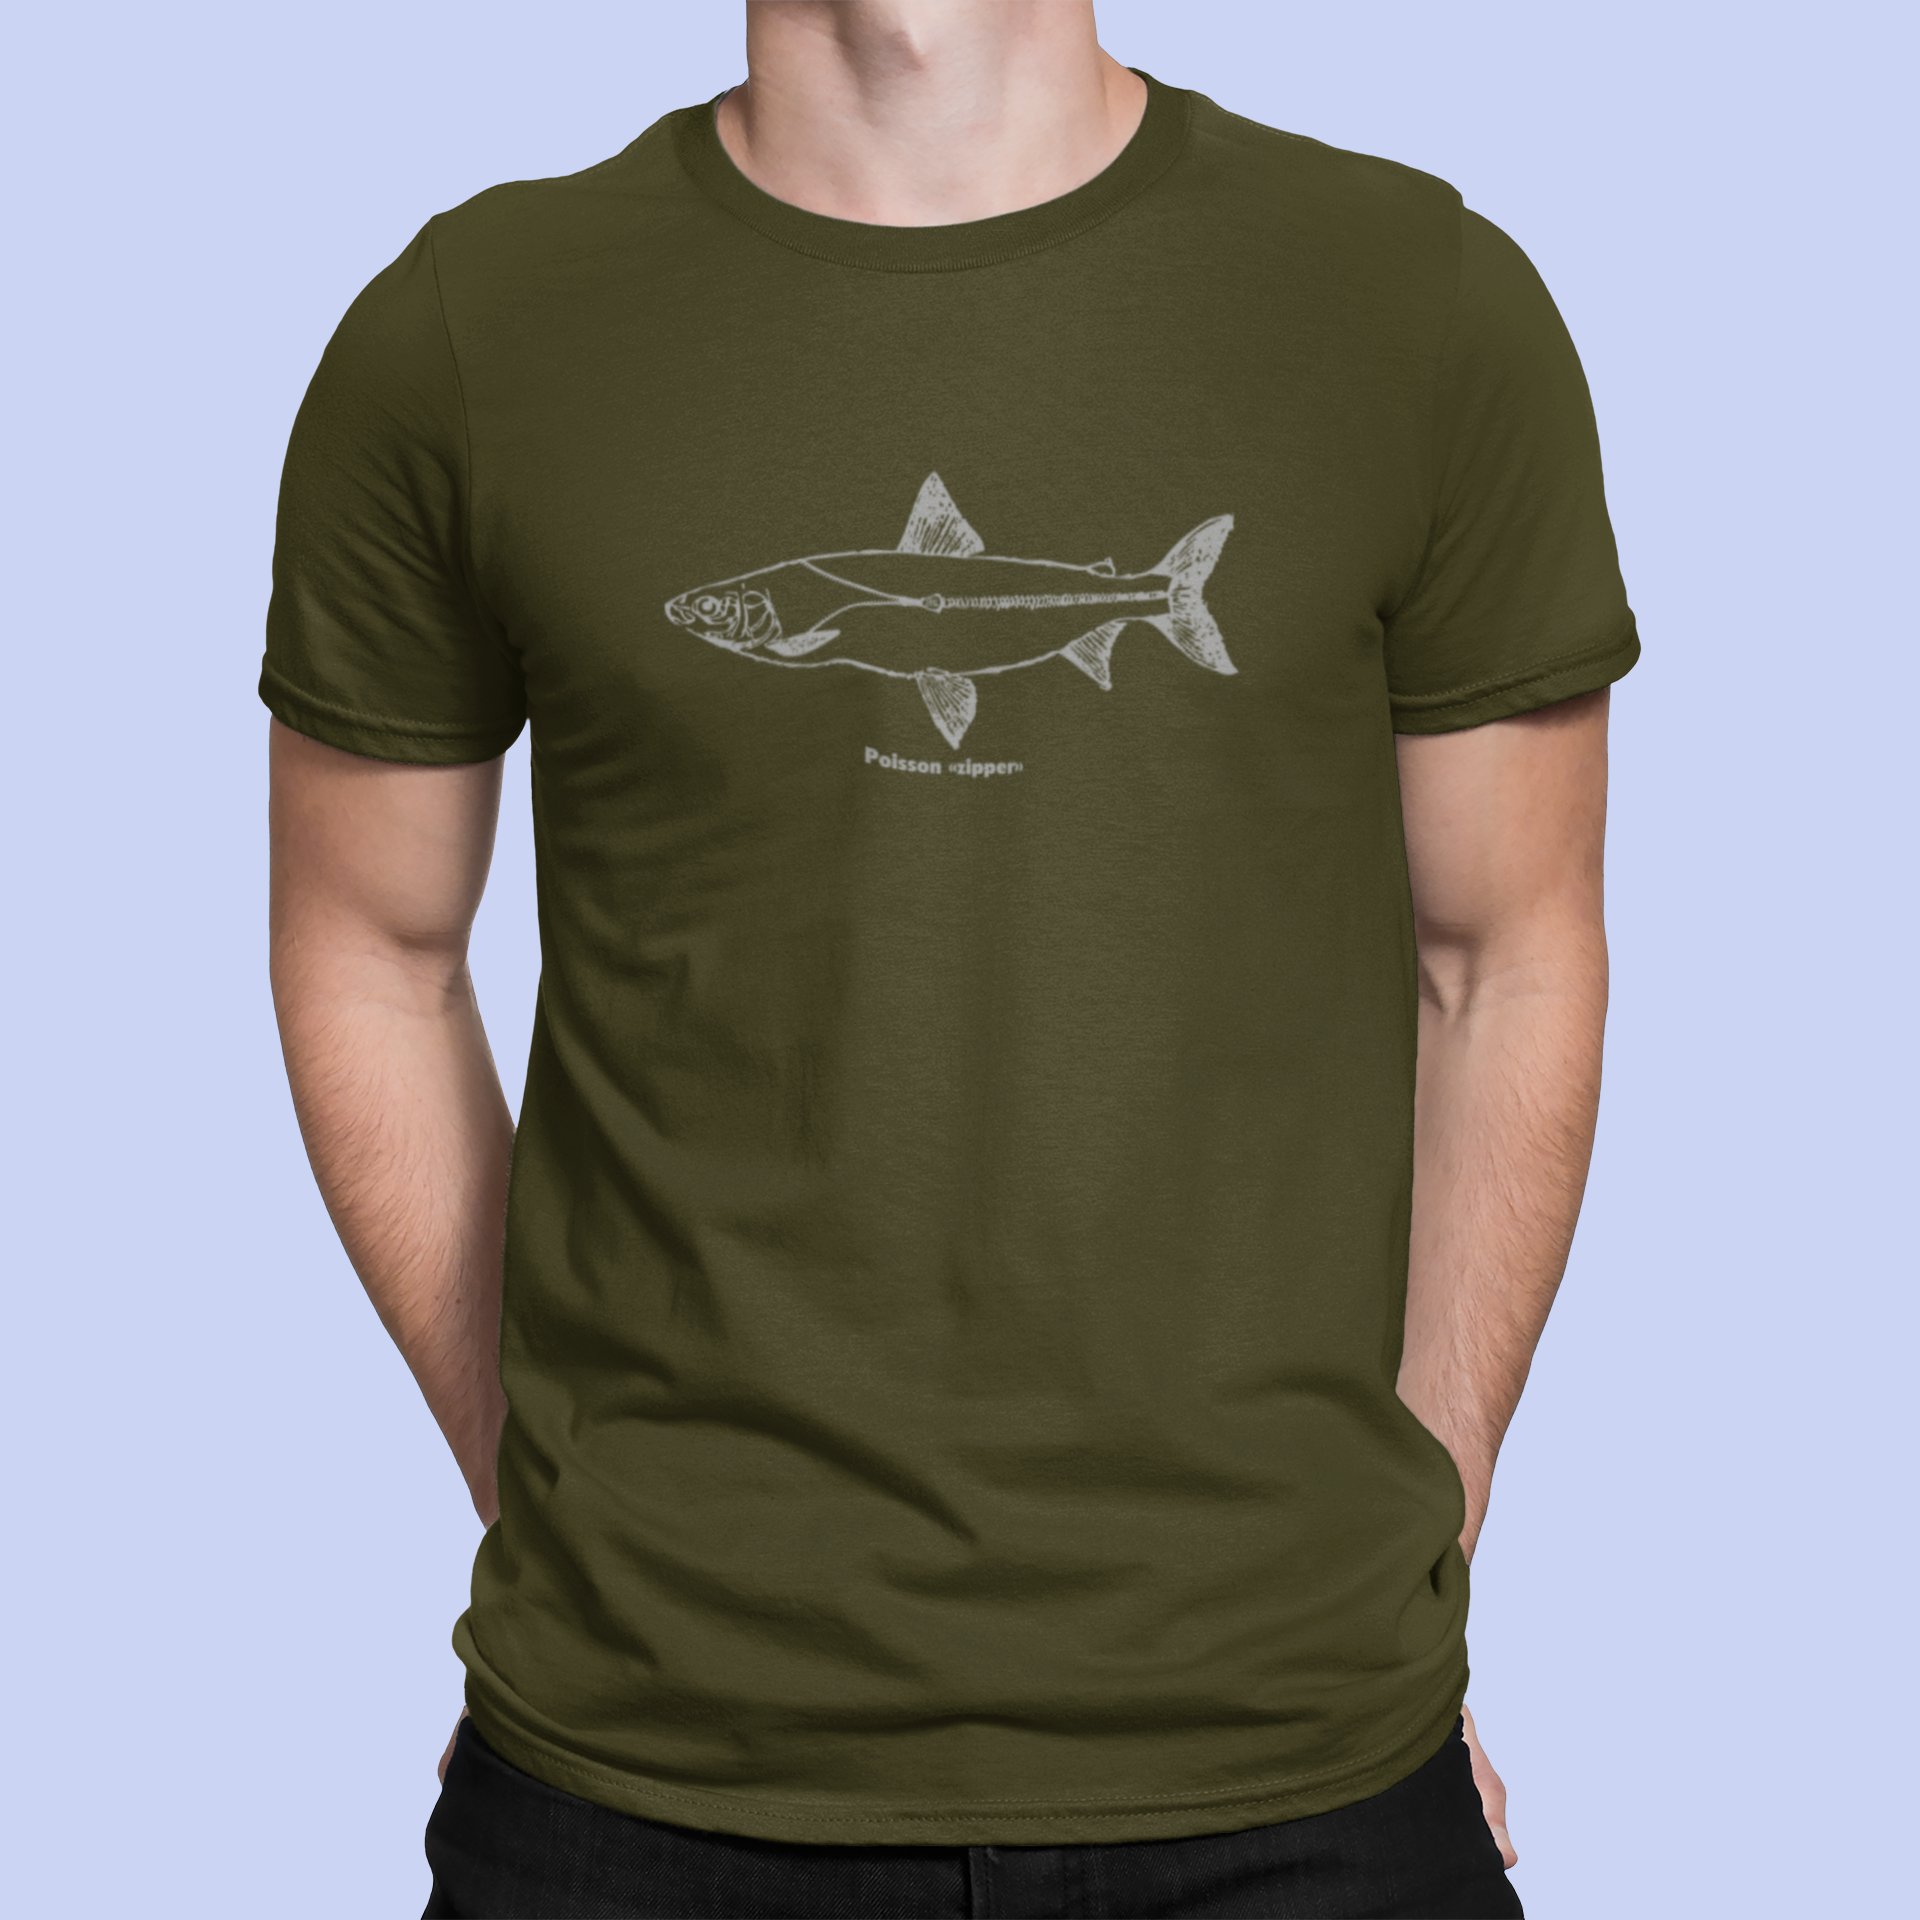 Fish zipper - Men's/Unisex T-shirt